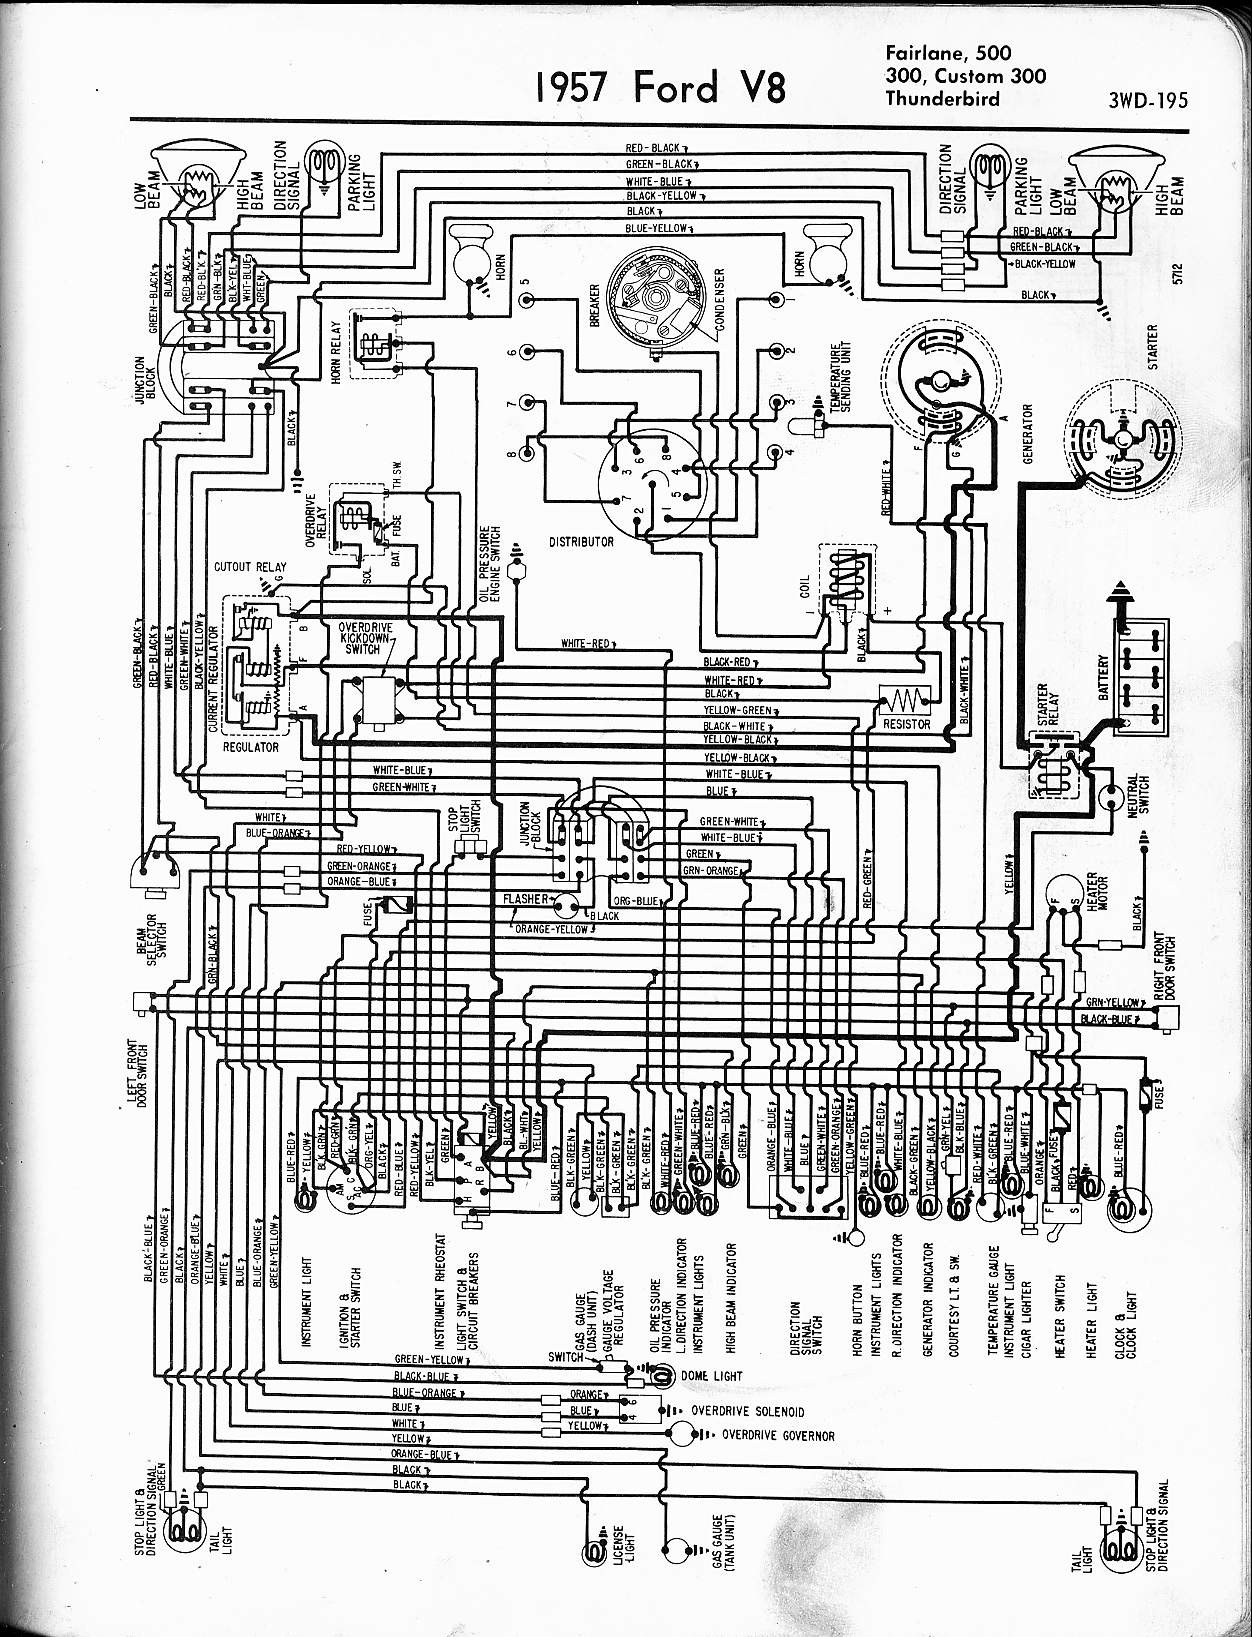 Mercury Mark 55e Wiring Diagram 57 65 ford Wiring Diagrams Of Mercury Mark 55e Wiring Diagram